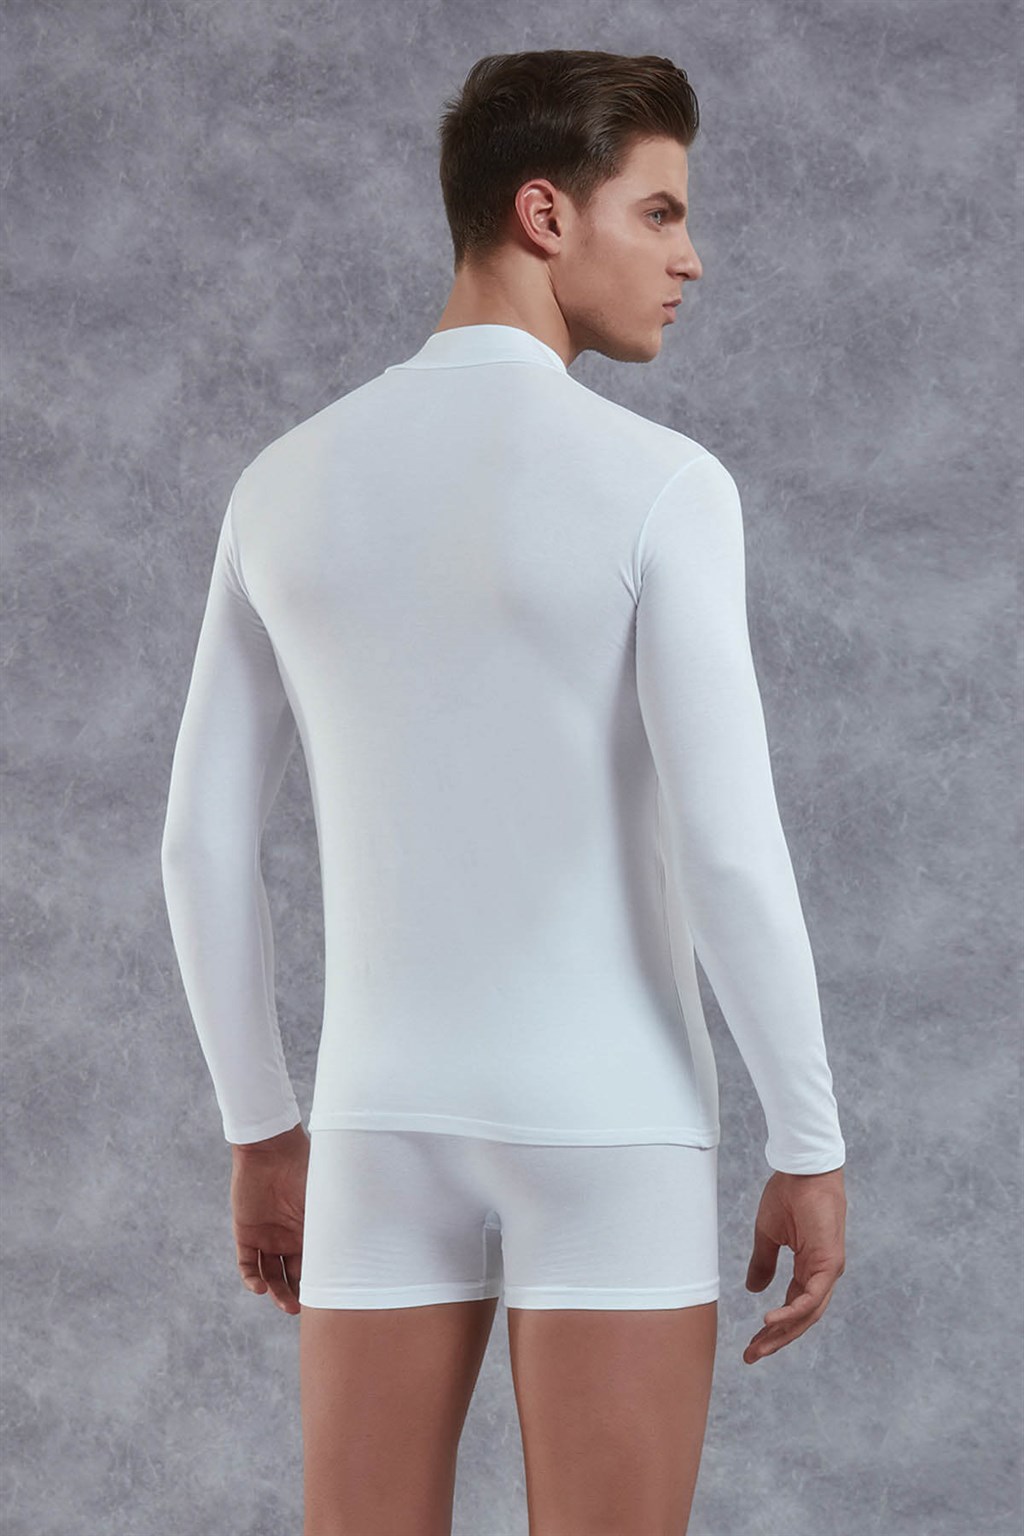 Doreanse Erkek Modal Boğazlı Yaka Uzun Kol T Shirt 2930 | Galiyet